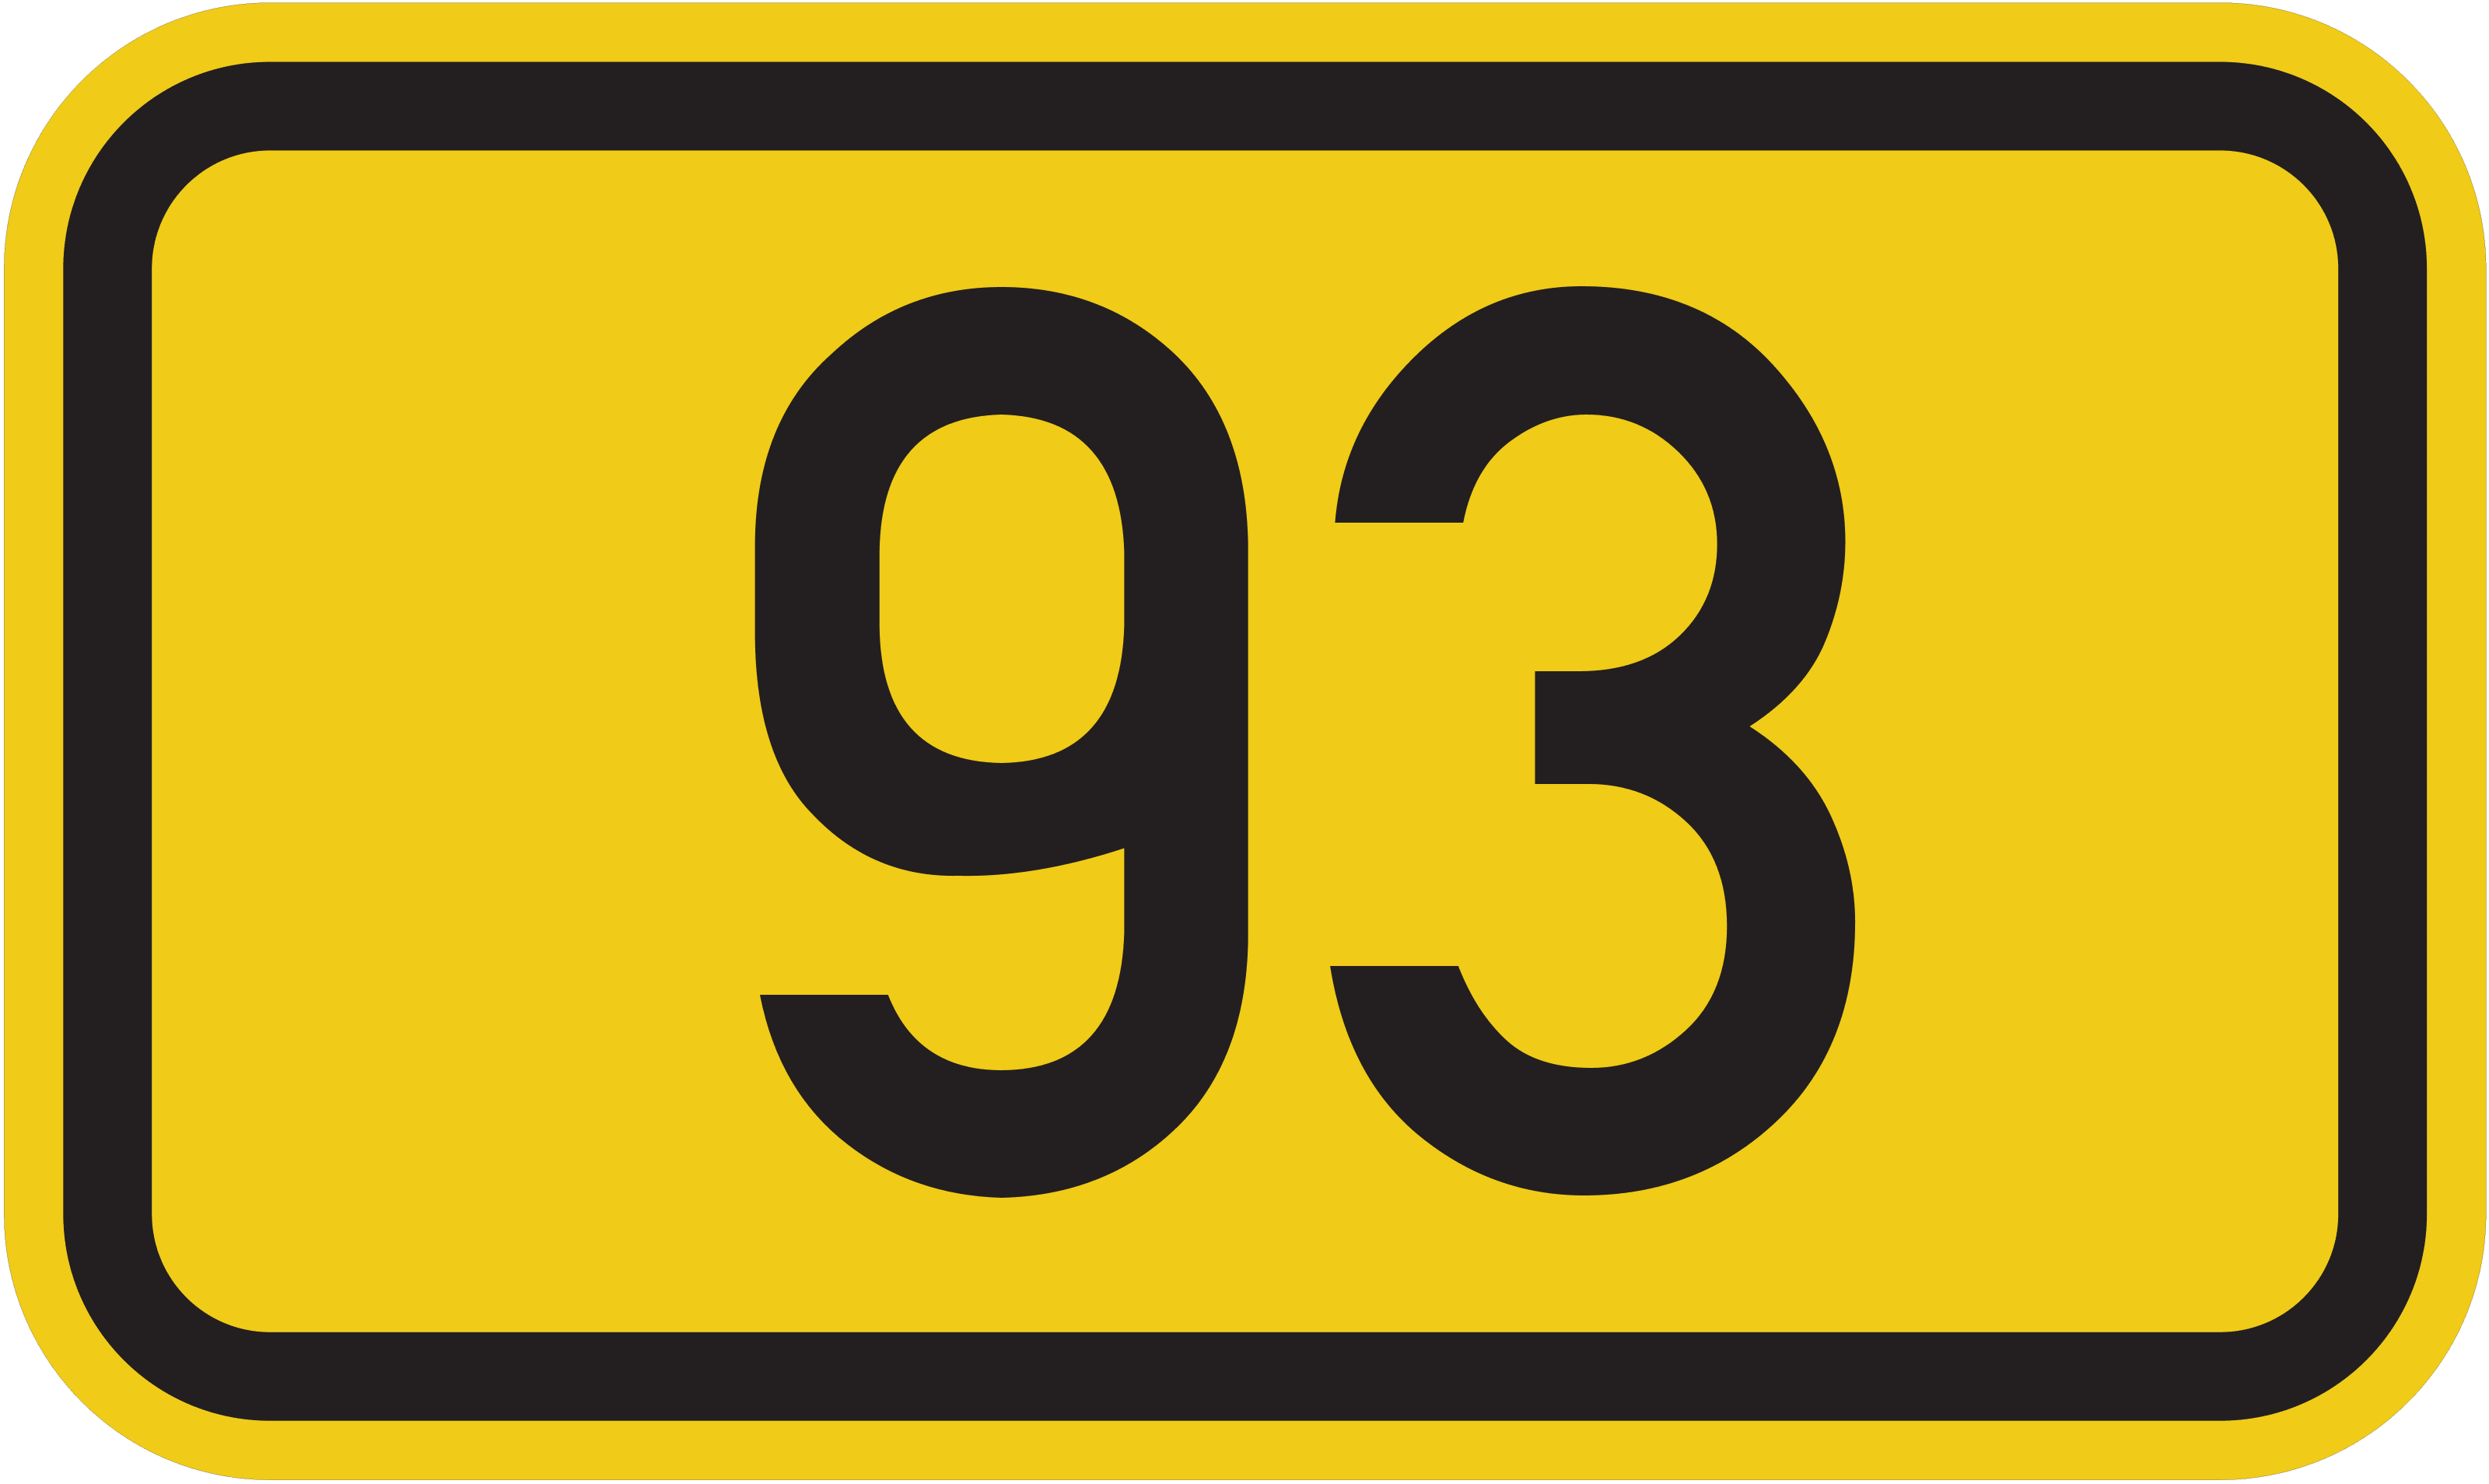 Bundesstraße B 93